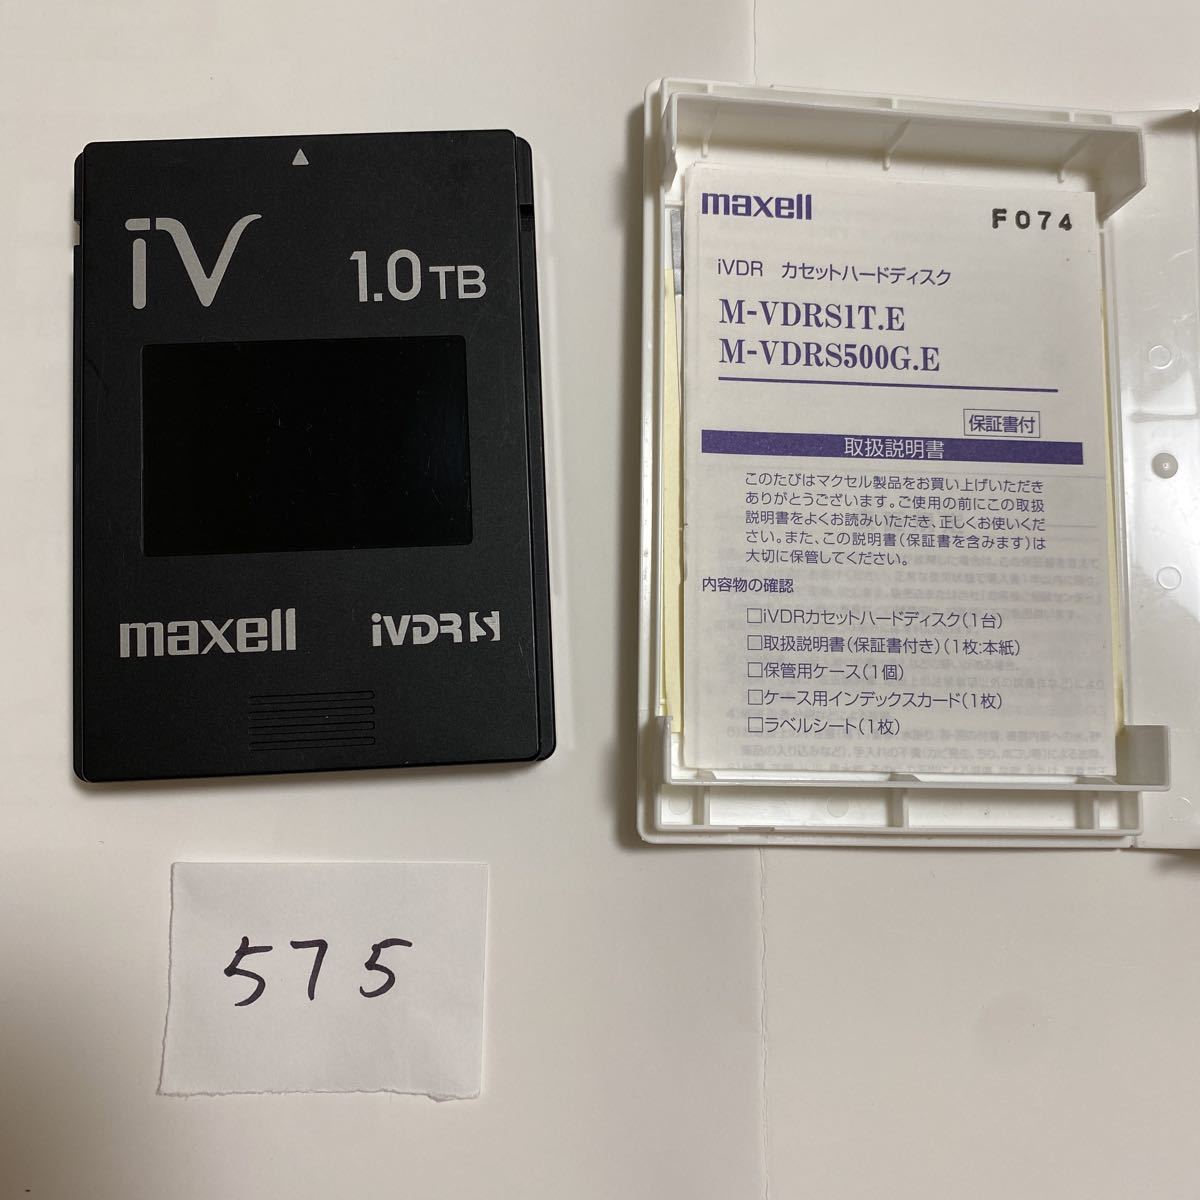 z575*maxell マクセル iVDR-S カセットHDD ハードディスク ブラック